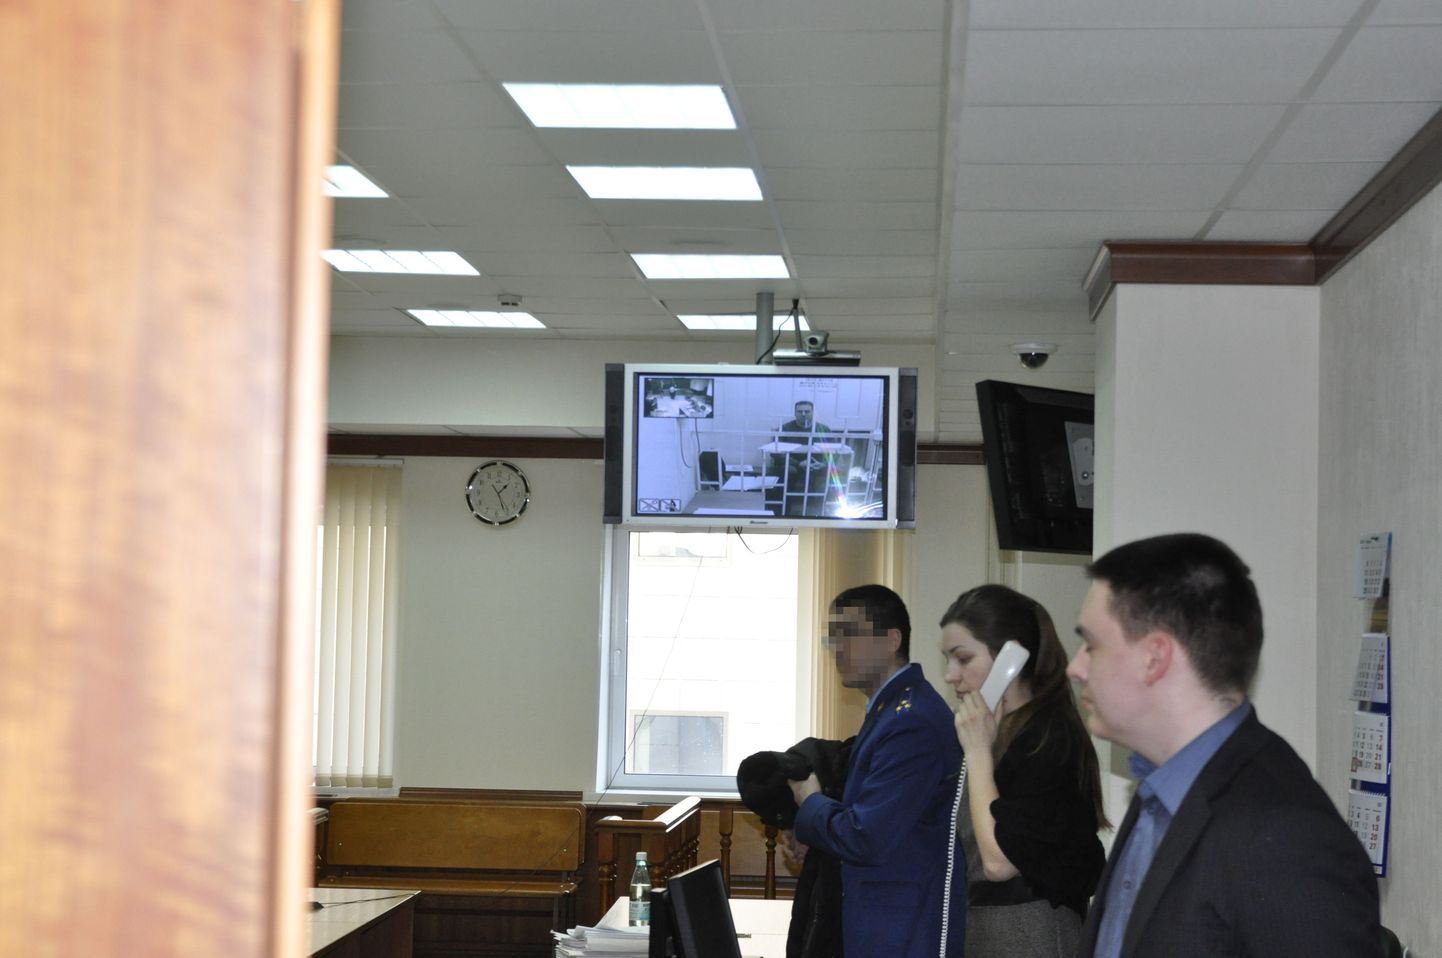 Корреспонденту Postimees удалось сделать фотографию из-за двери Московского суда. На экране за решеткой Райво Суси.